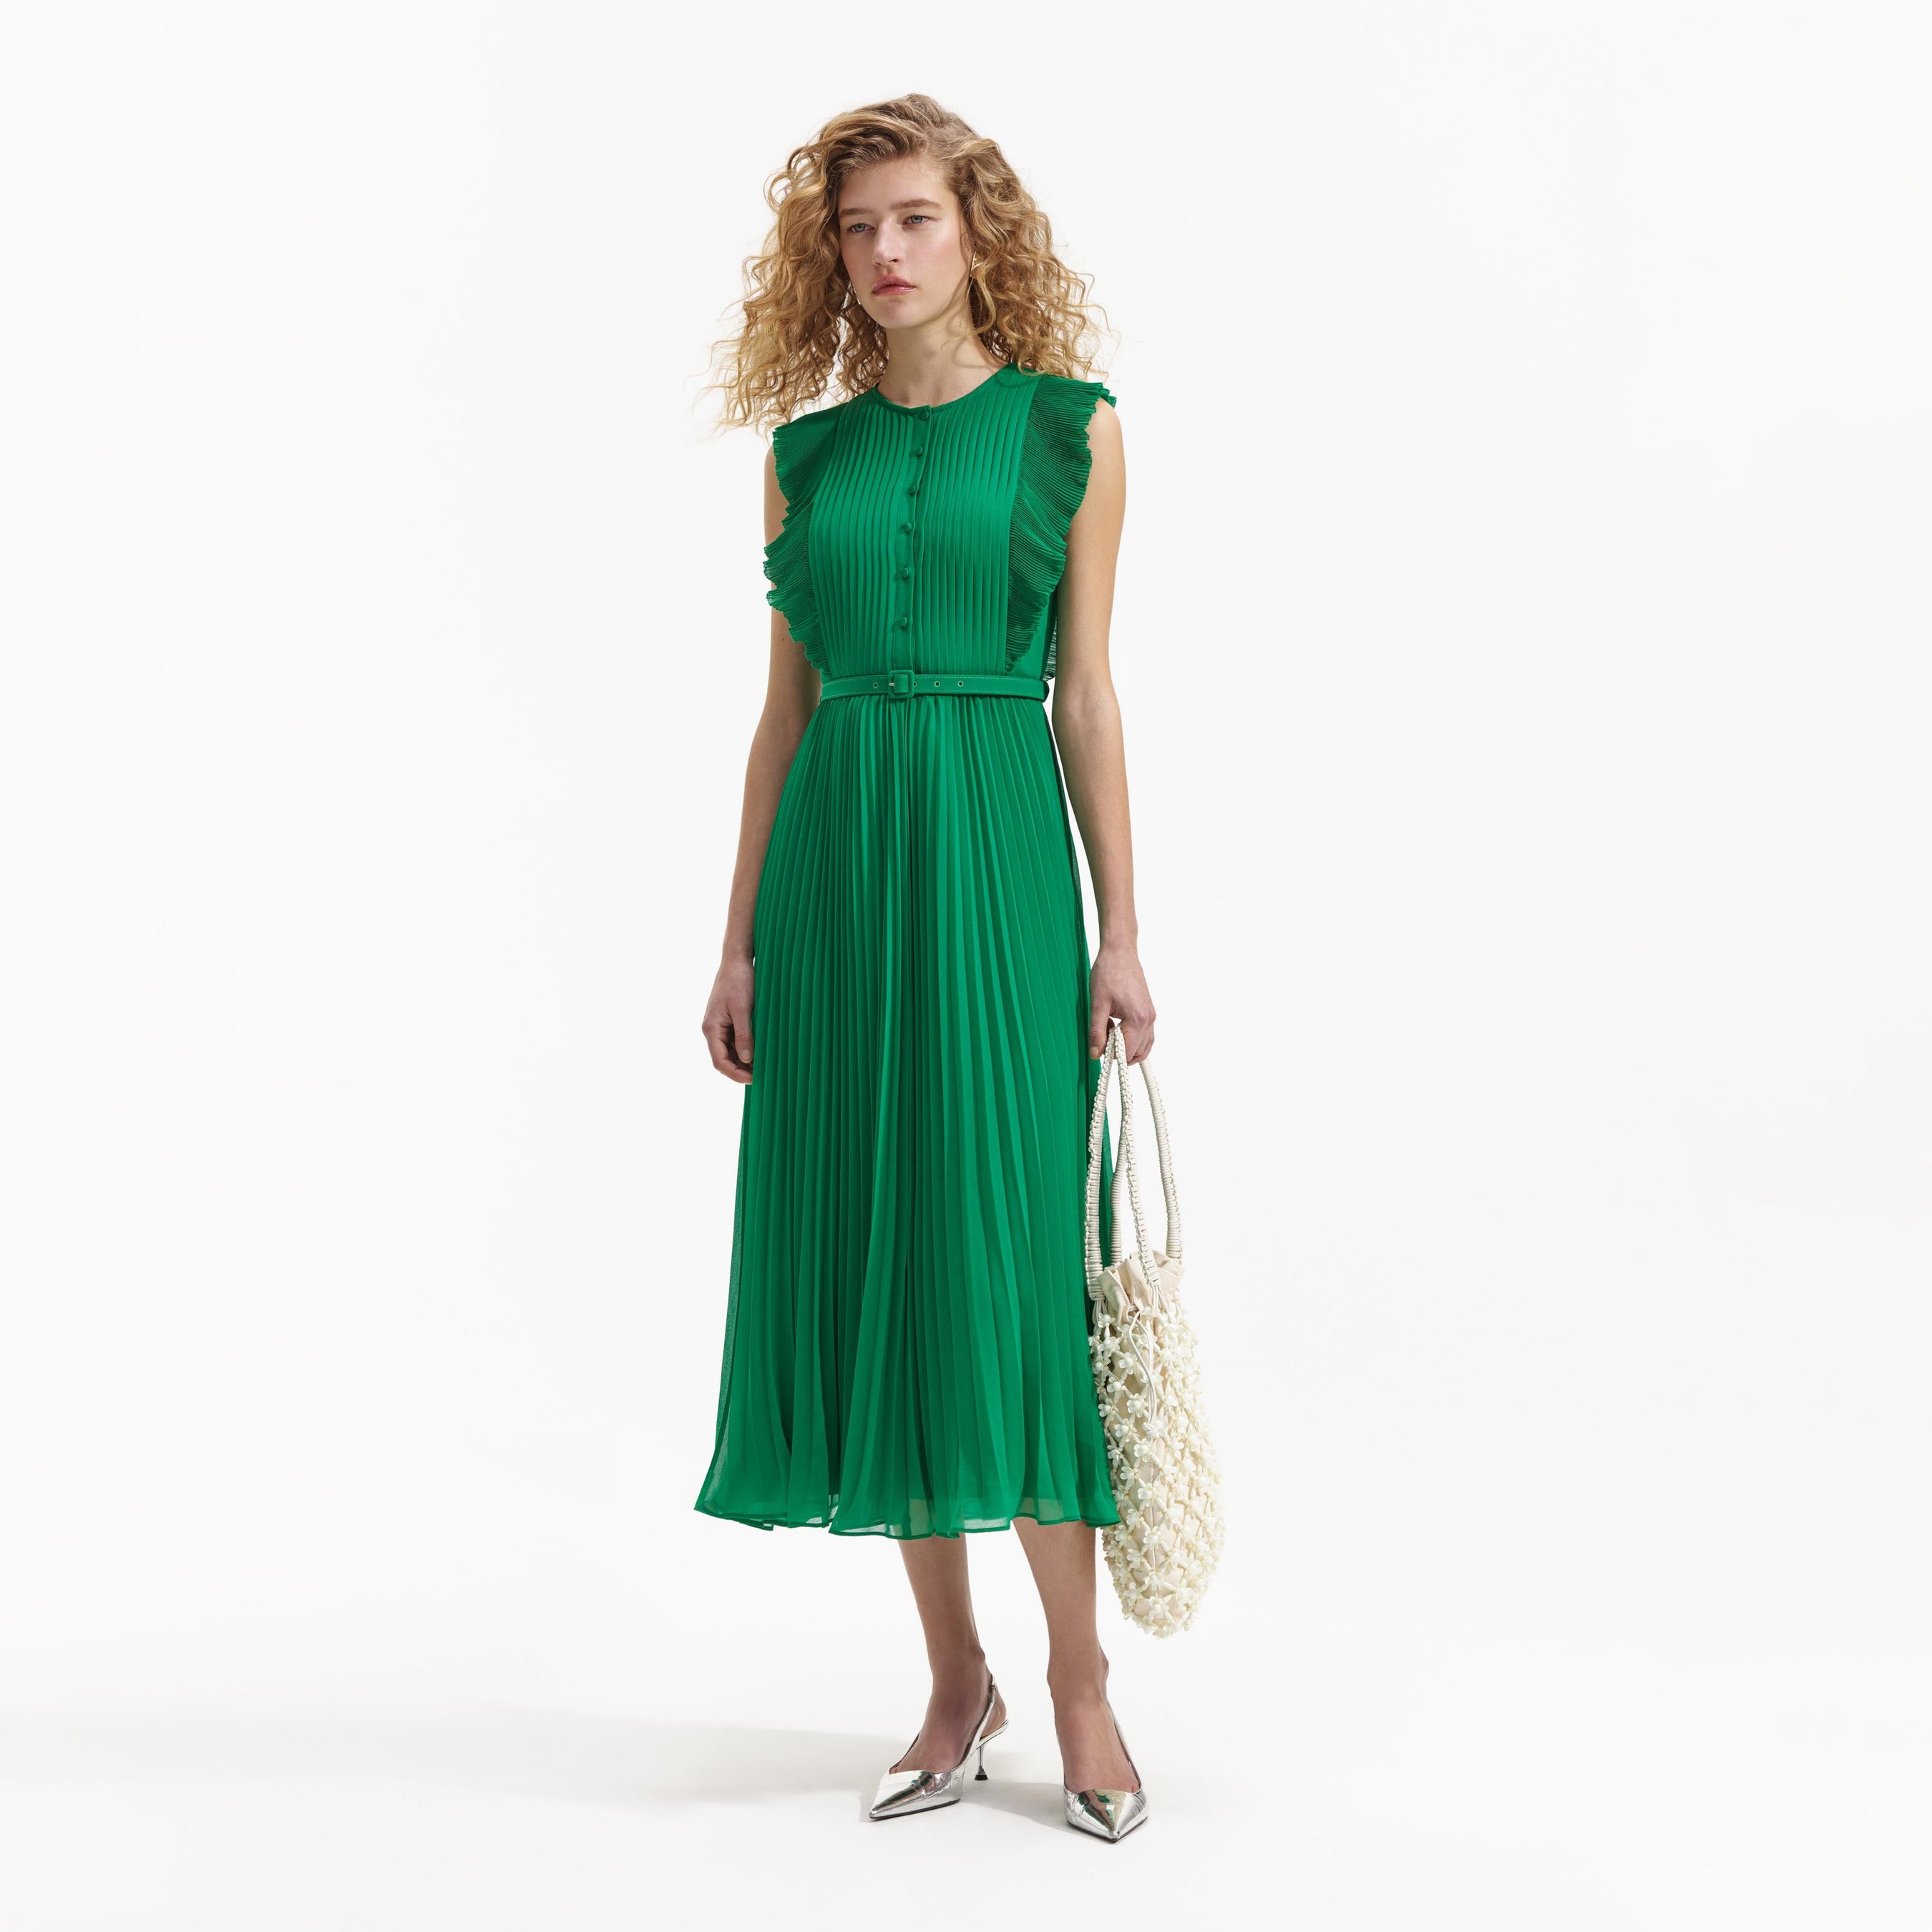 Green Chiffon Sleeveless Ruffle Midi Dress